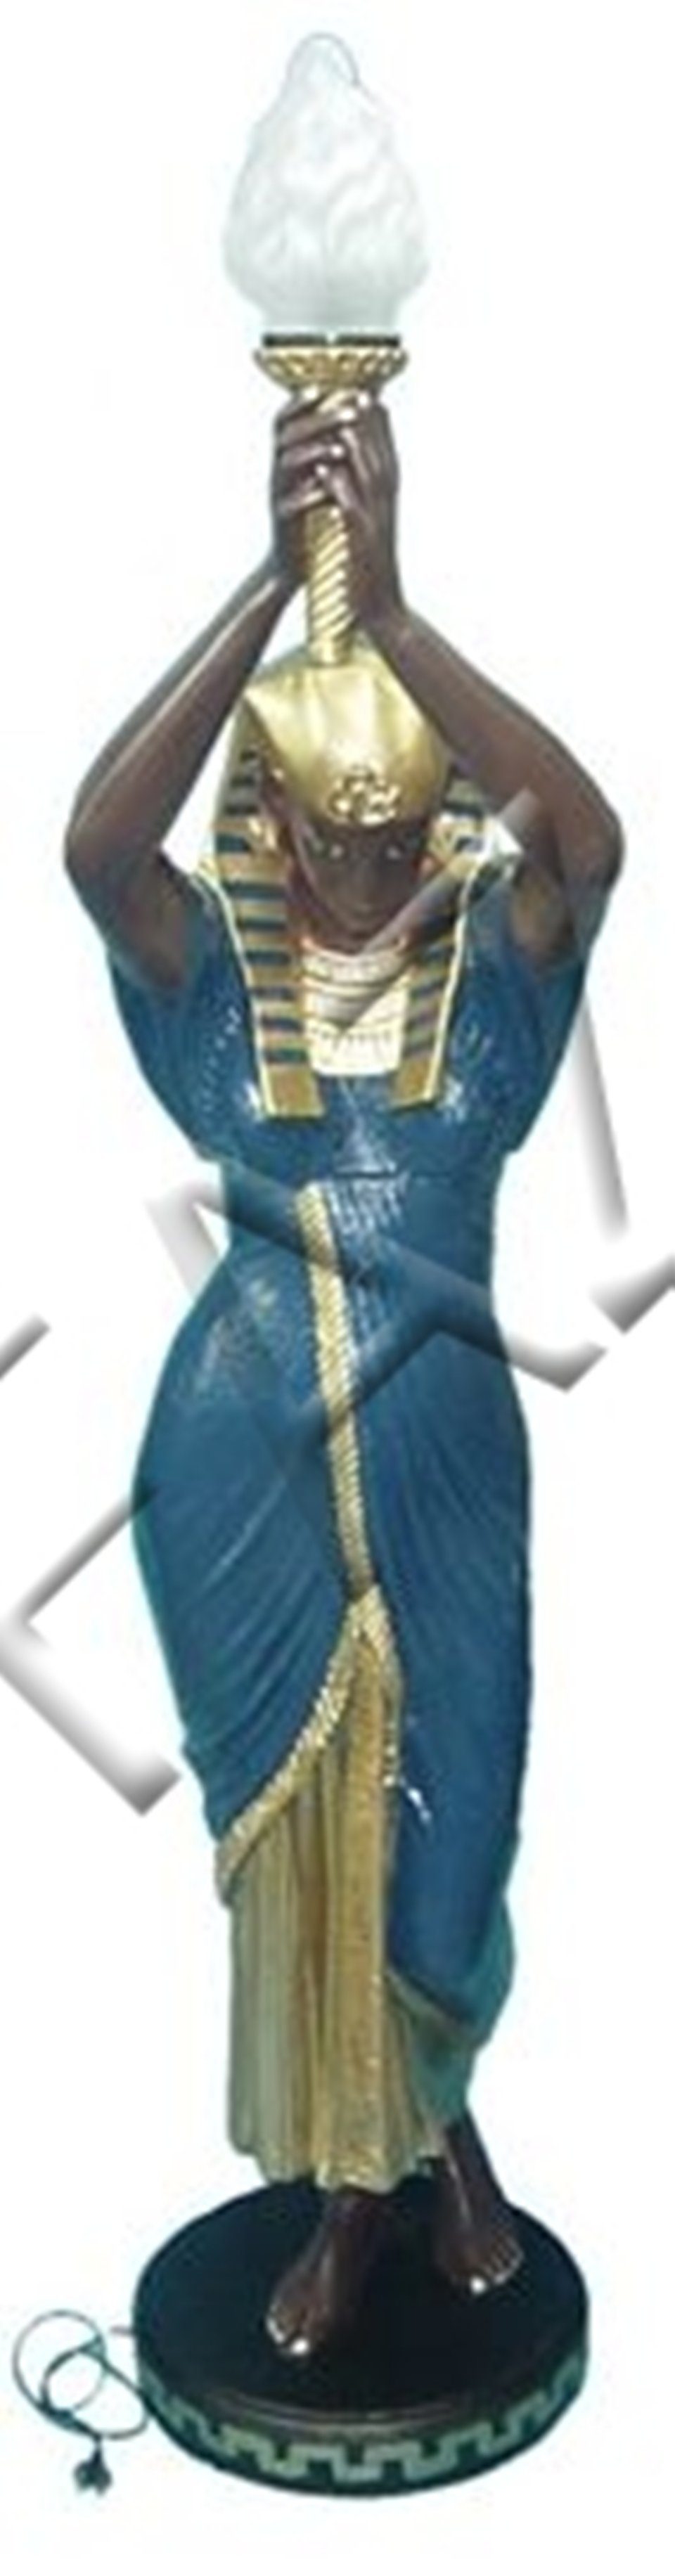 JVmoebel Skulptur Design Ägyptische Figur Statue Skulptur Figuren Skulpturen Dekoration Deko Neu